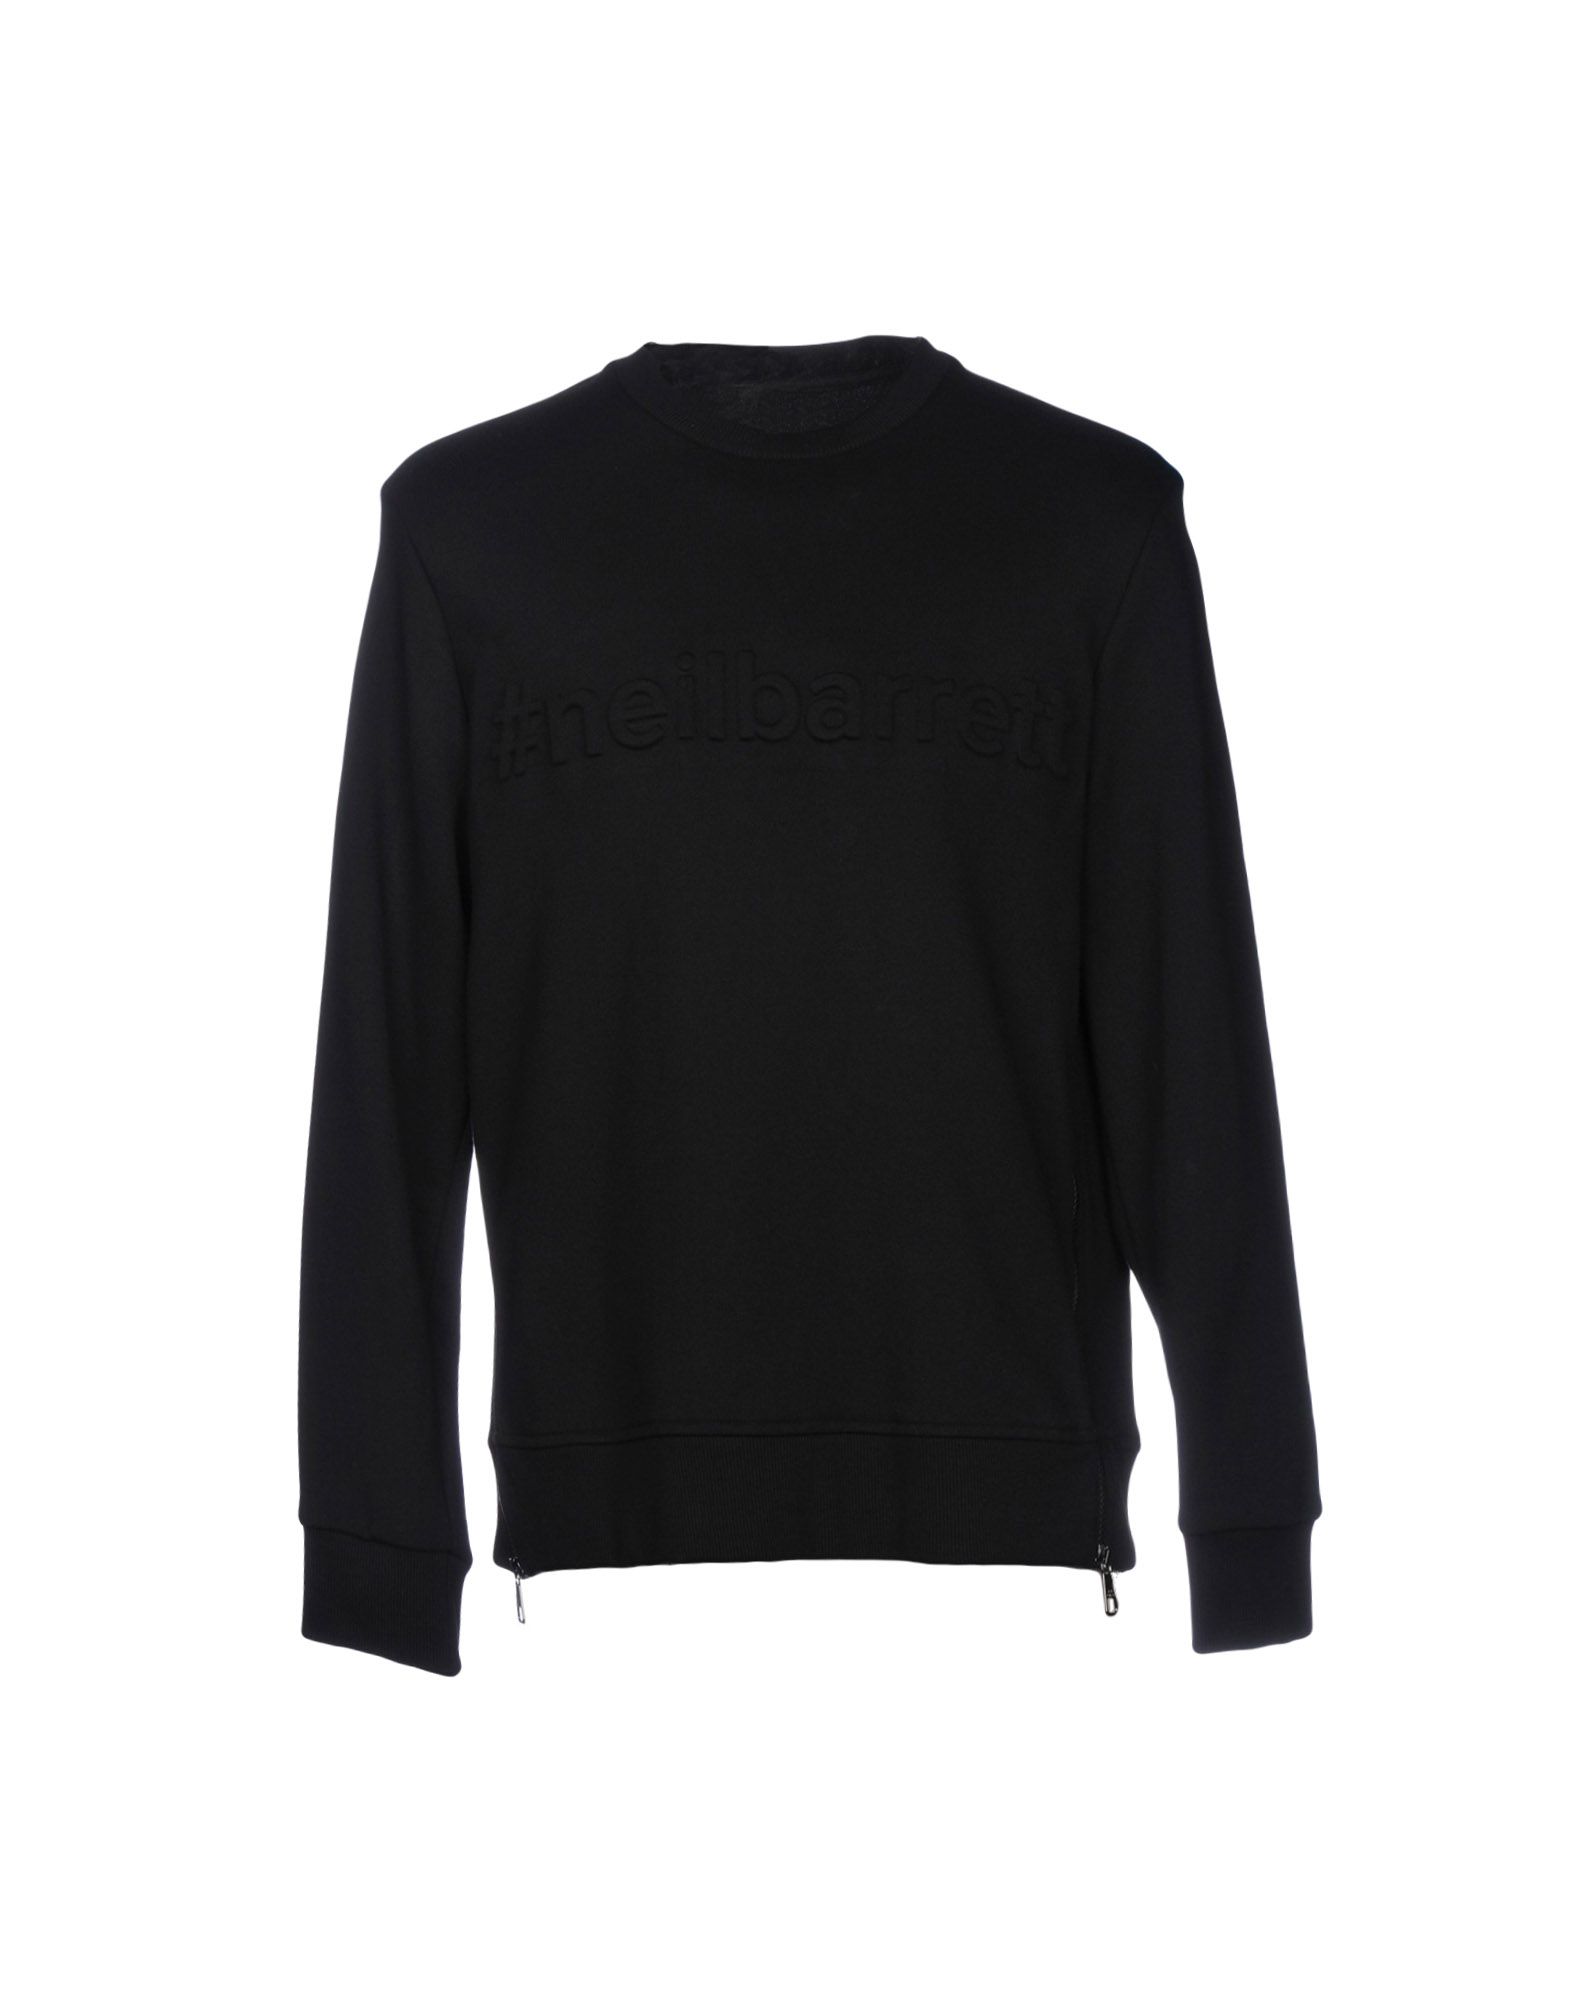 《送料無料》NEIL BARRETT メンズ スウェットシャツ ブラック XS コットン 100% / レーヨン / ポリウレタン